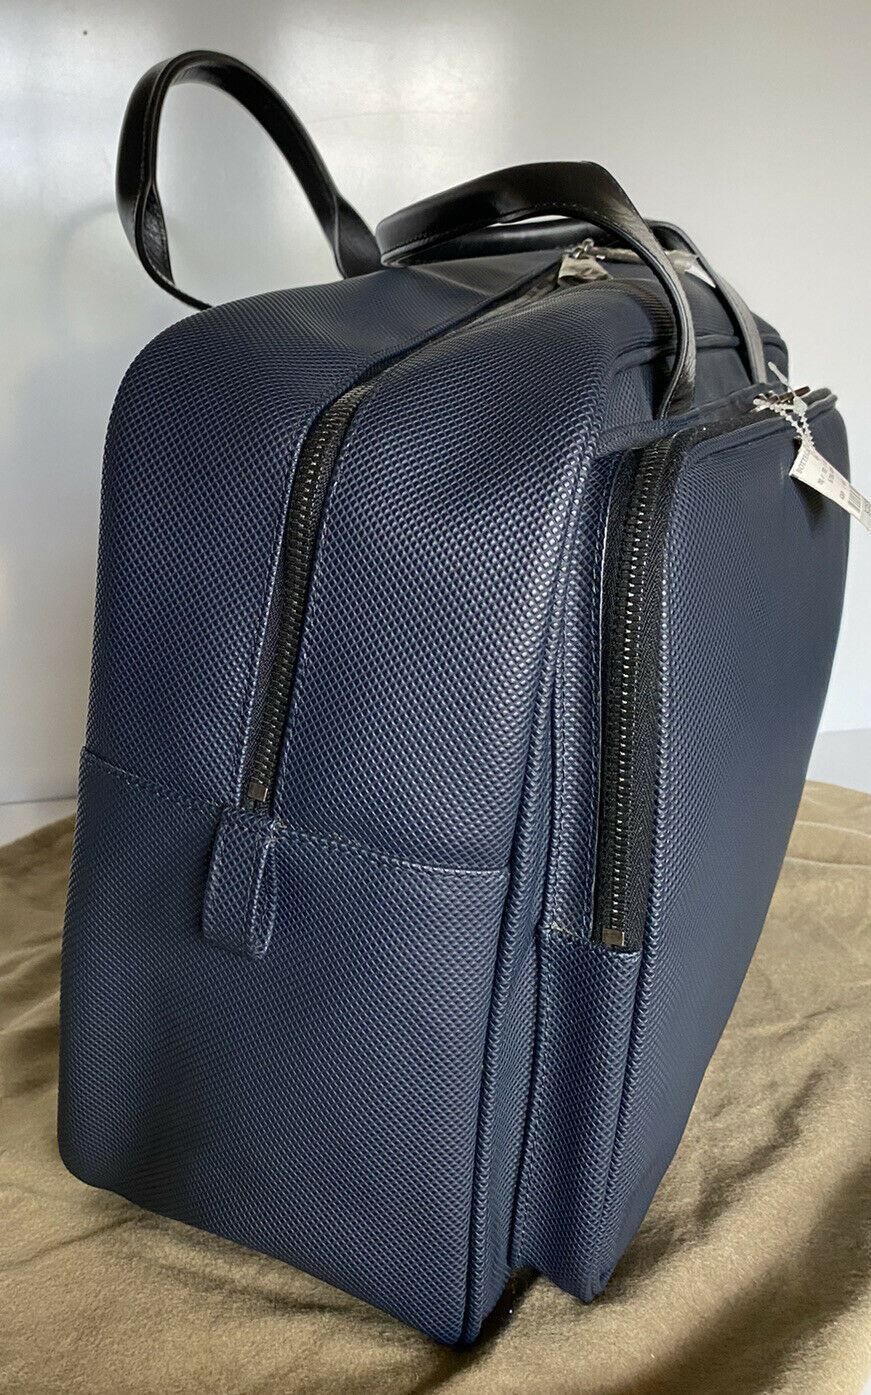 Новая мужская дорожная сумка из темно-синей кожи Marcopolo Bottega Veneta стоимостью 1450 долларов США 167304 